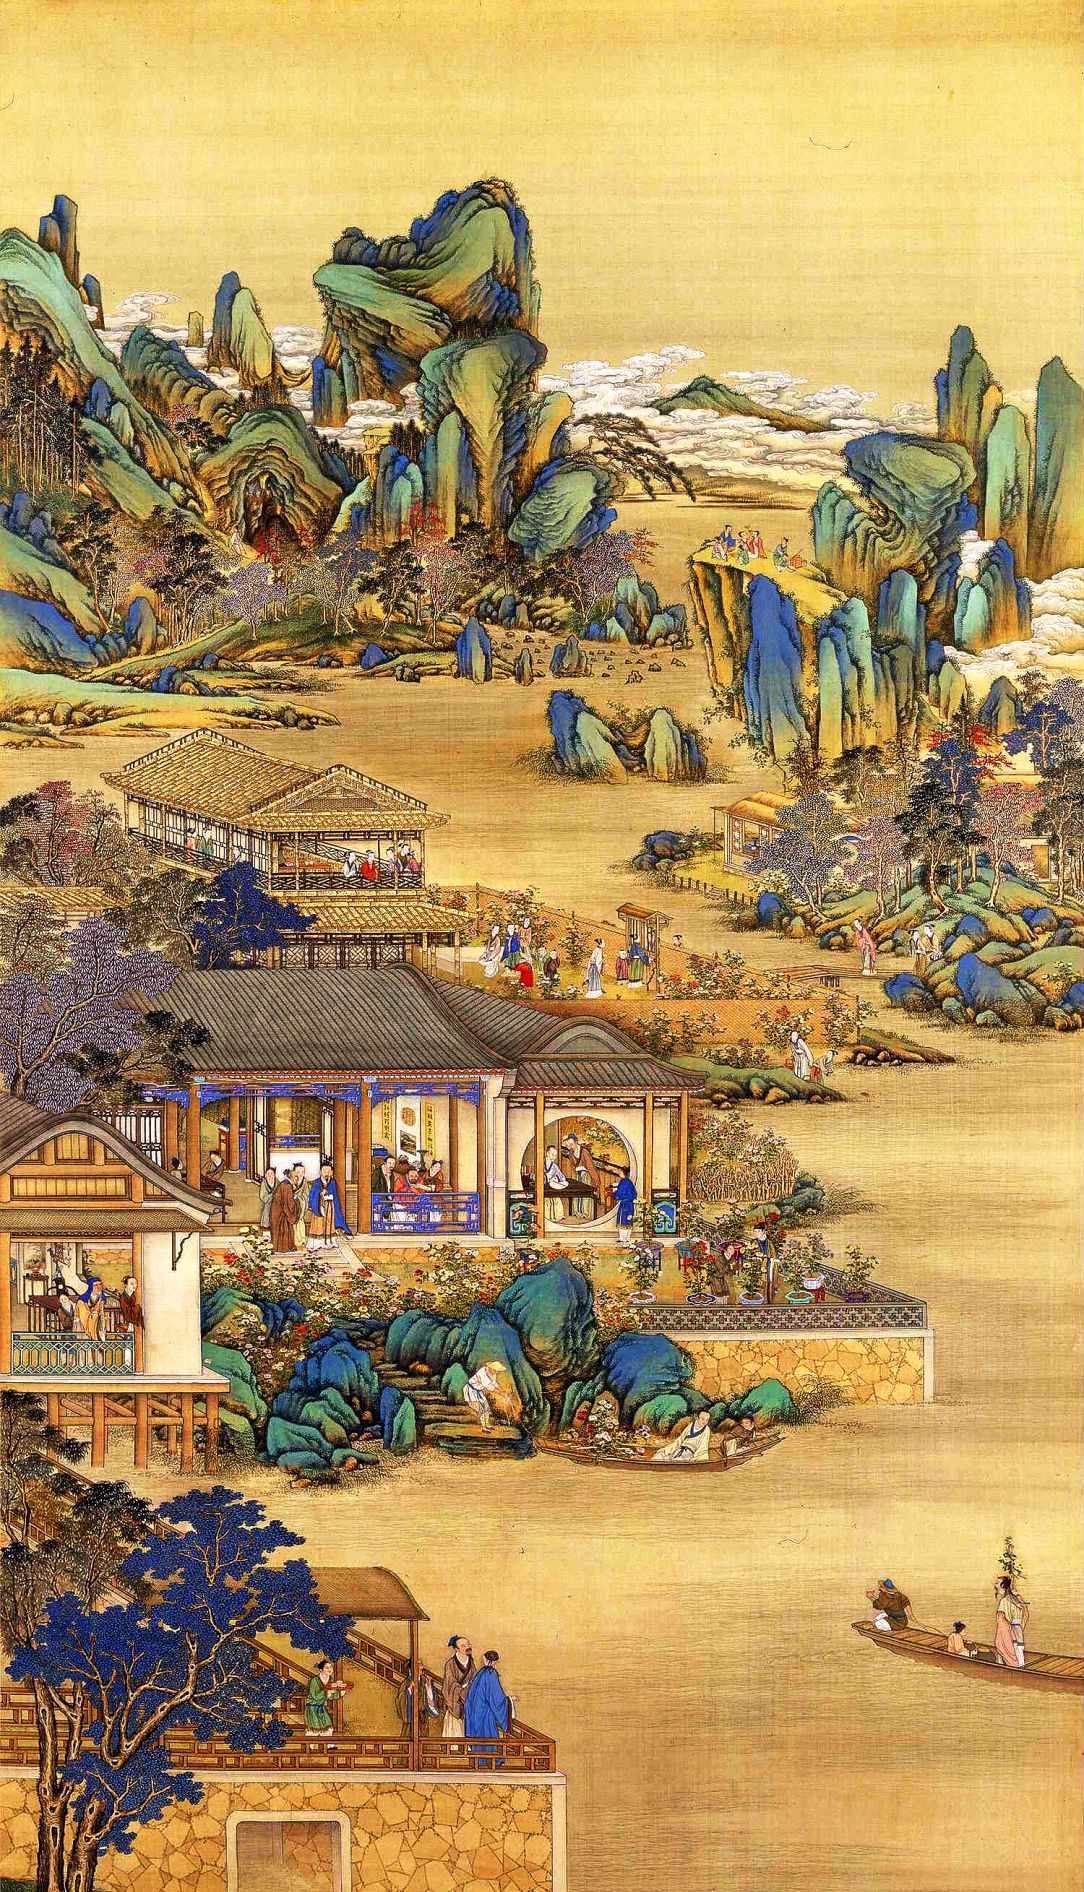 故宫珍藏《雍正十二月行乐图》——皇帝生活一窥圆明园真实面貌